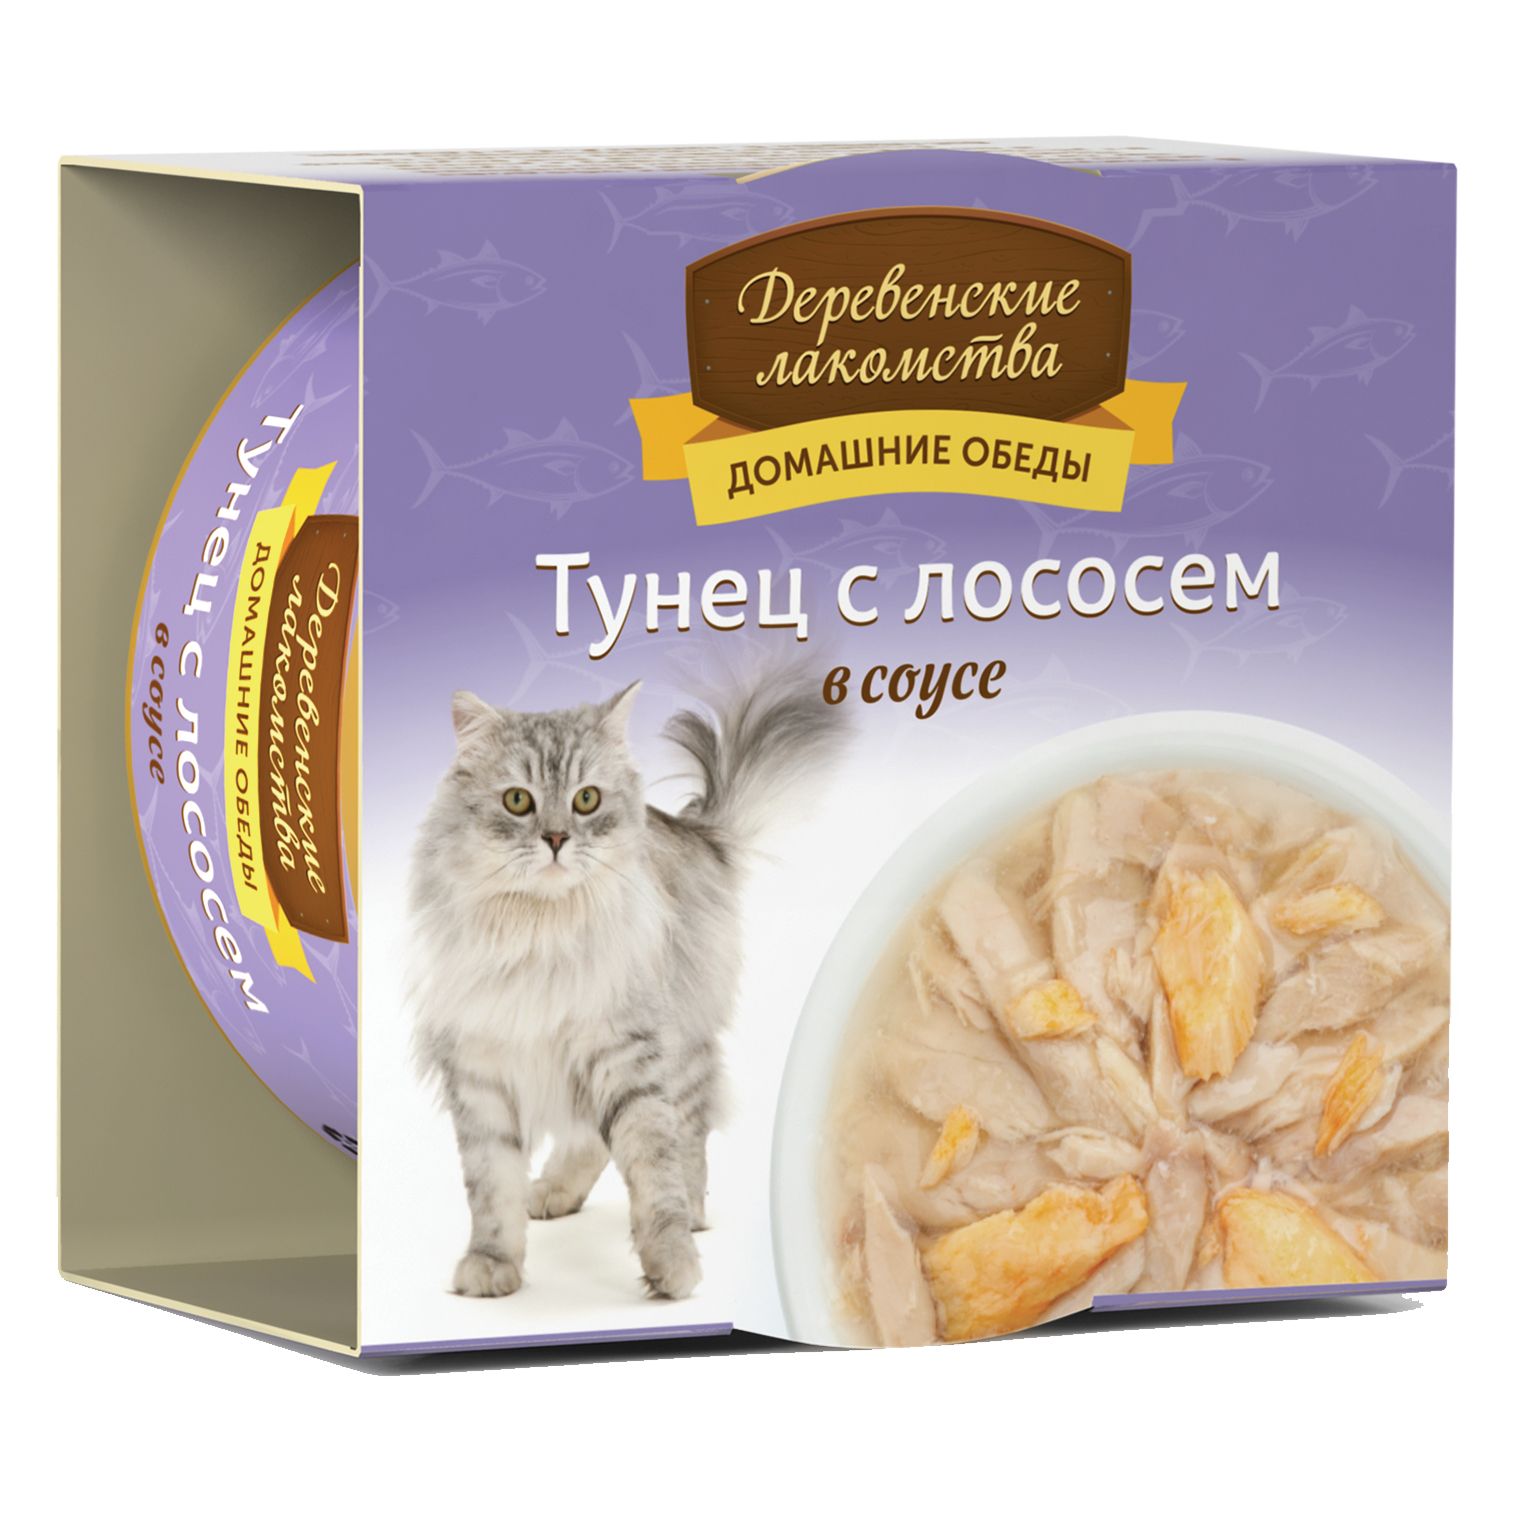 Деревенские лакомства Тунец/Лосось консервы для кошек 80 г  2